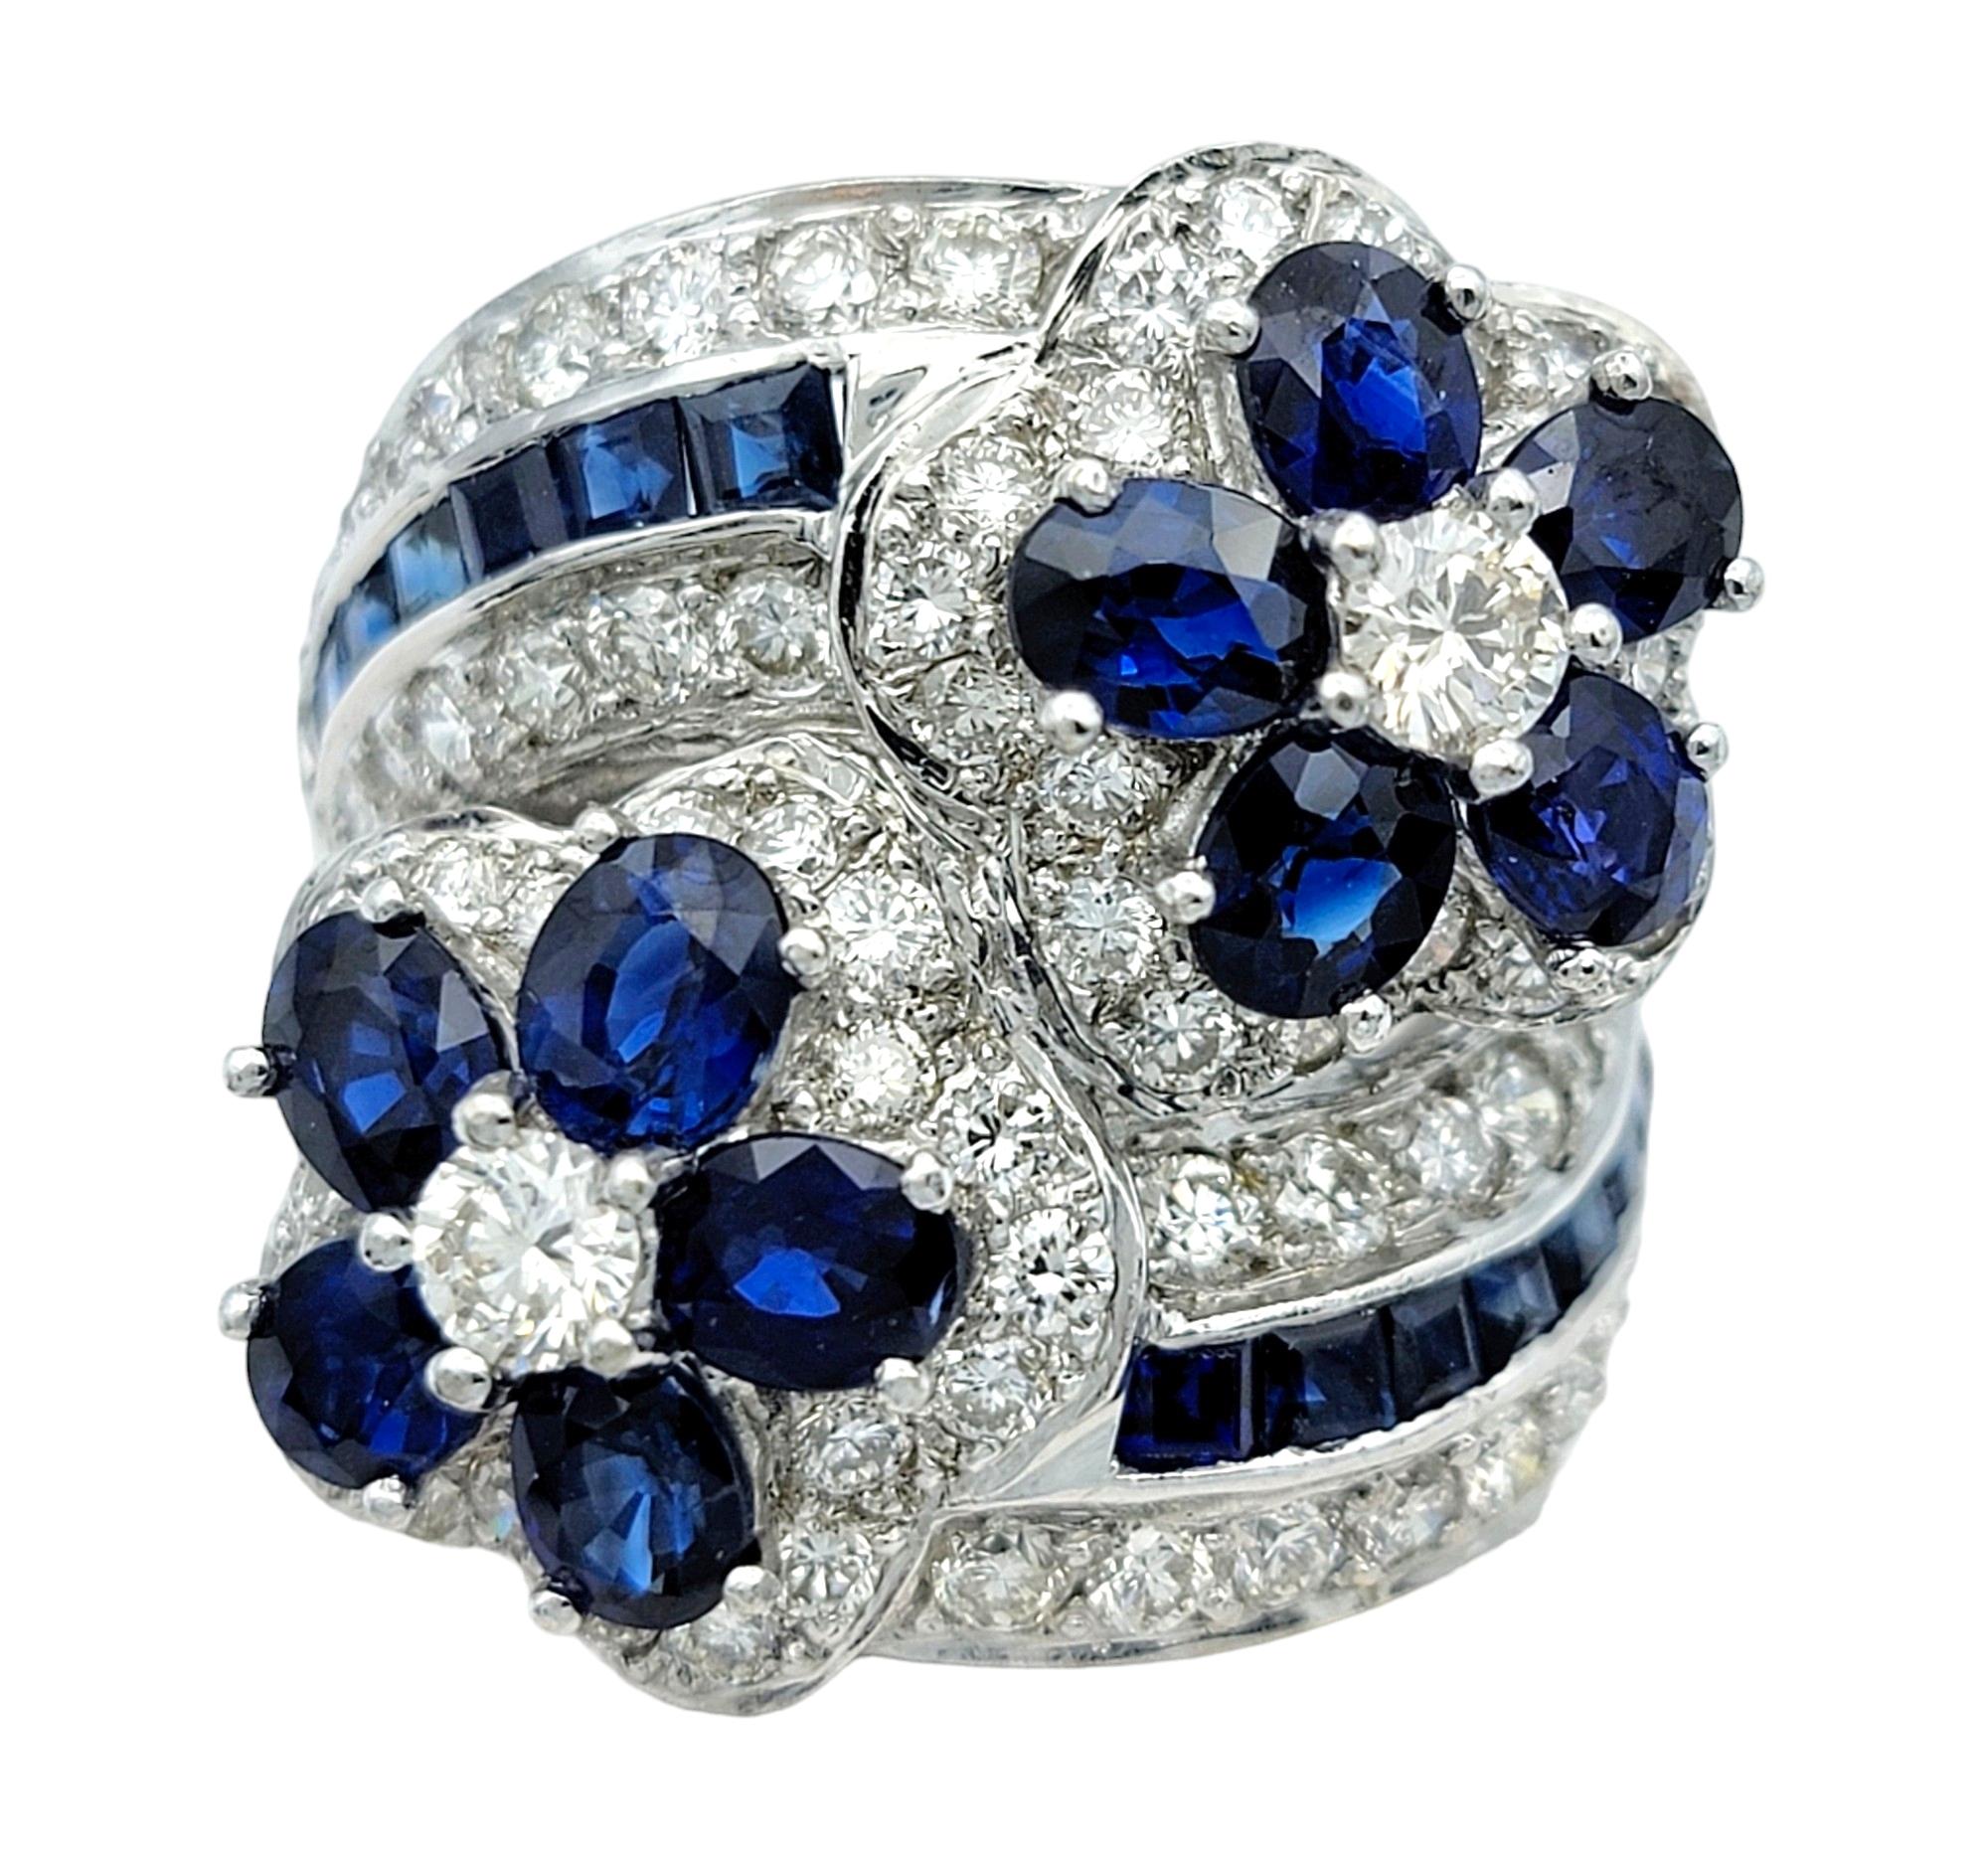 Ringgröße: 6.75

Dieser wunderschöne Blumenring mit blauem Saphir und Diamanten ist ein fesselndes Schmuckstück, das die Faszination von Saphiren und Diamanten in einem atemberaubenden Blumendesign vereint. Dieser Ring aus elegantem 18-karätigem